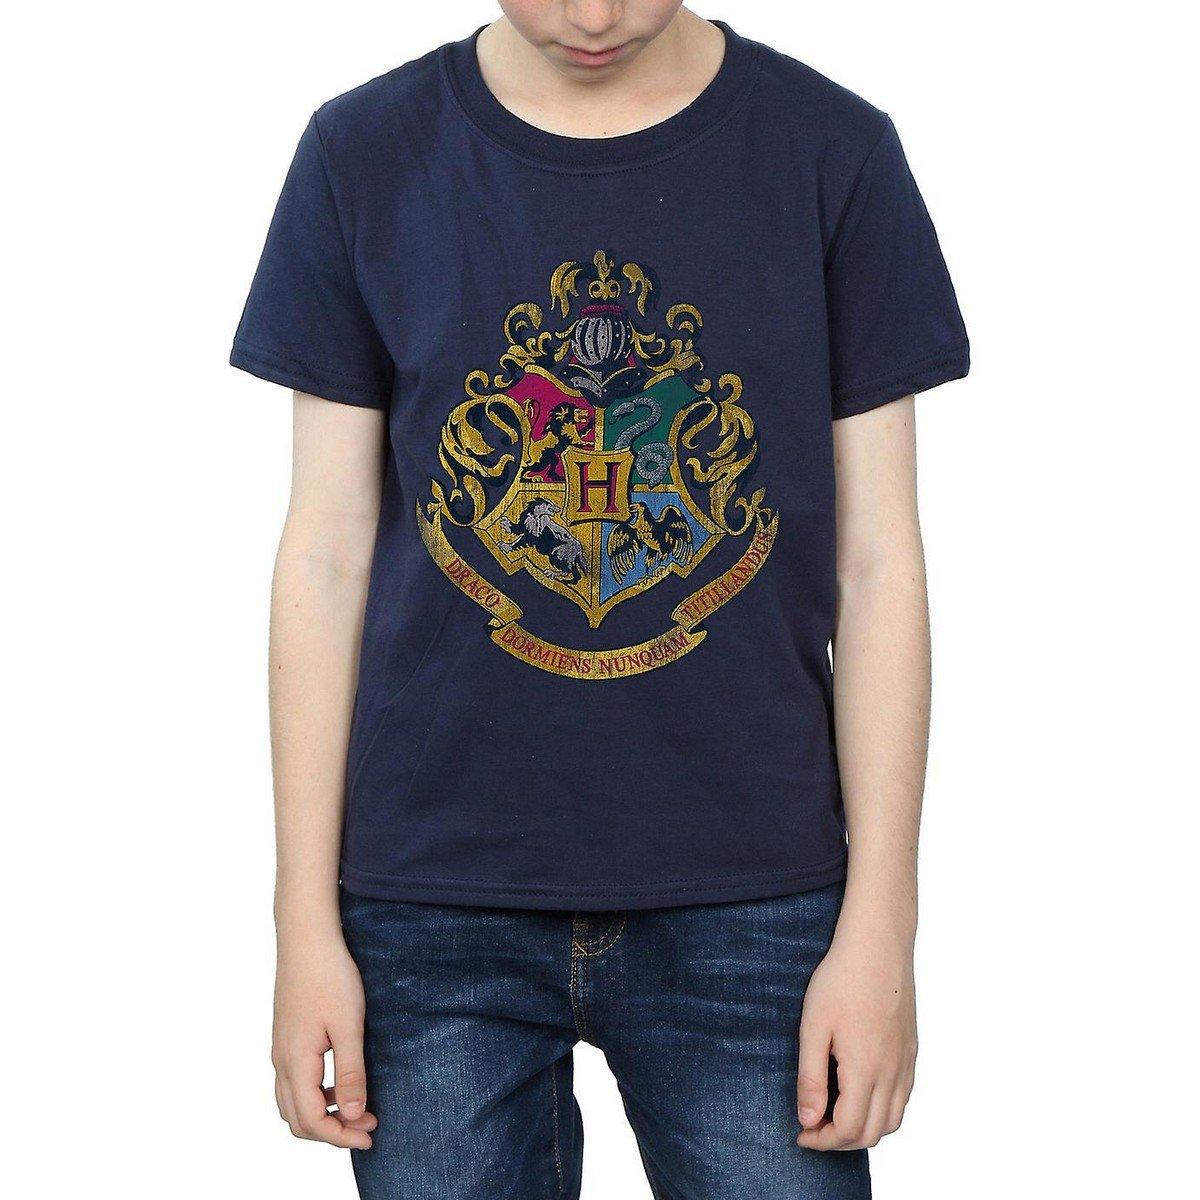 Tshirt Jungen Marine 152-158 von Harry Potter